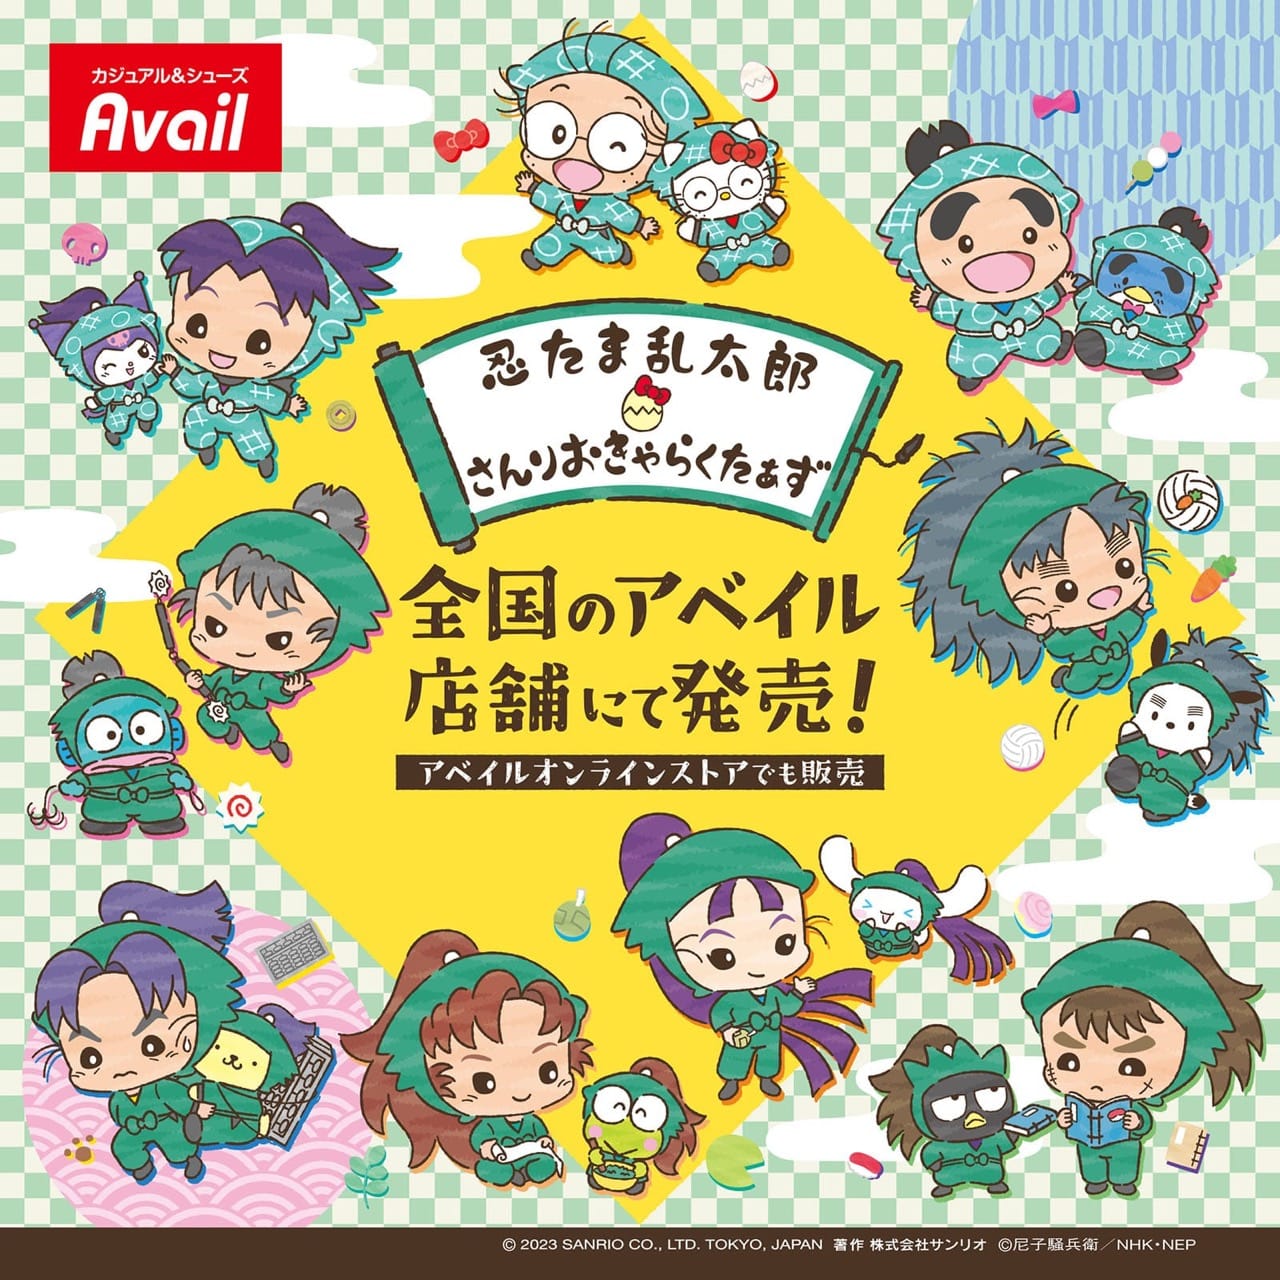 忍たま乱太郎 × サンリオ 描き下ろしグッズ アベイルにて6月17日発売!